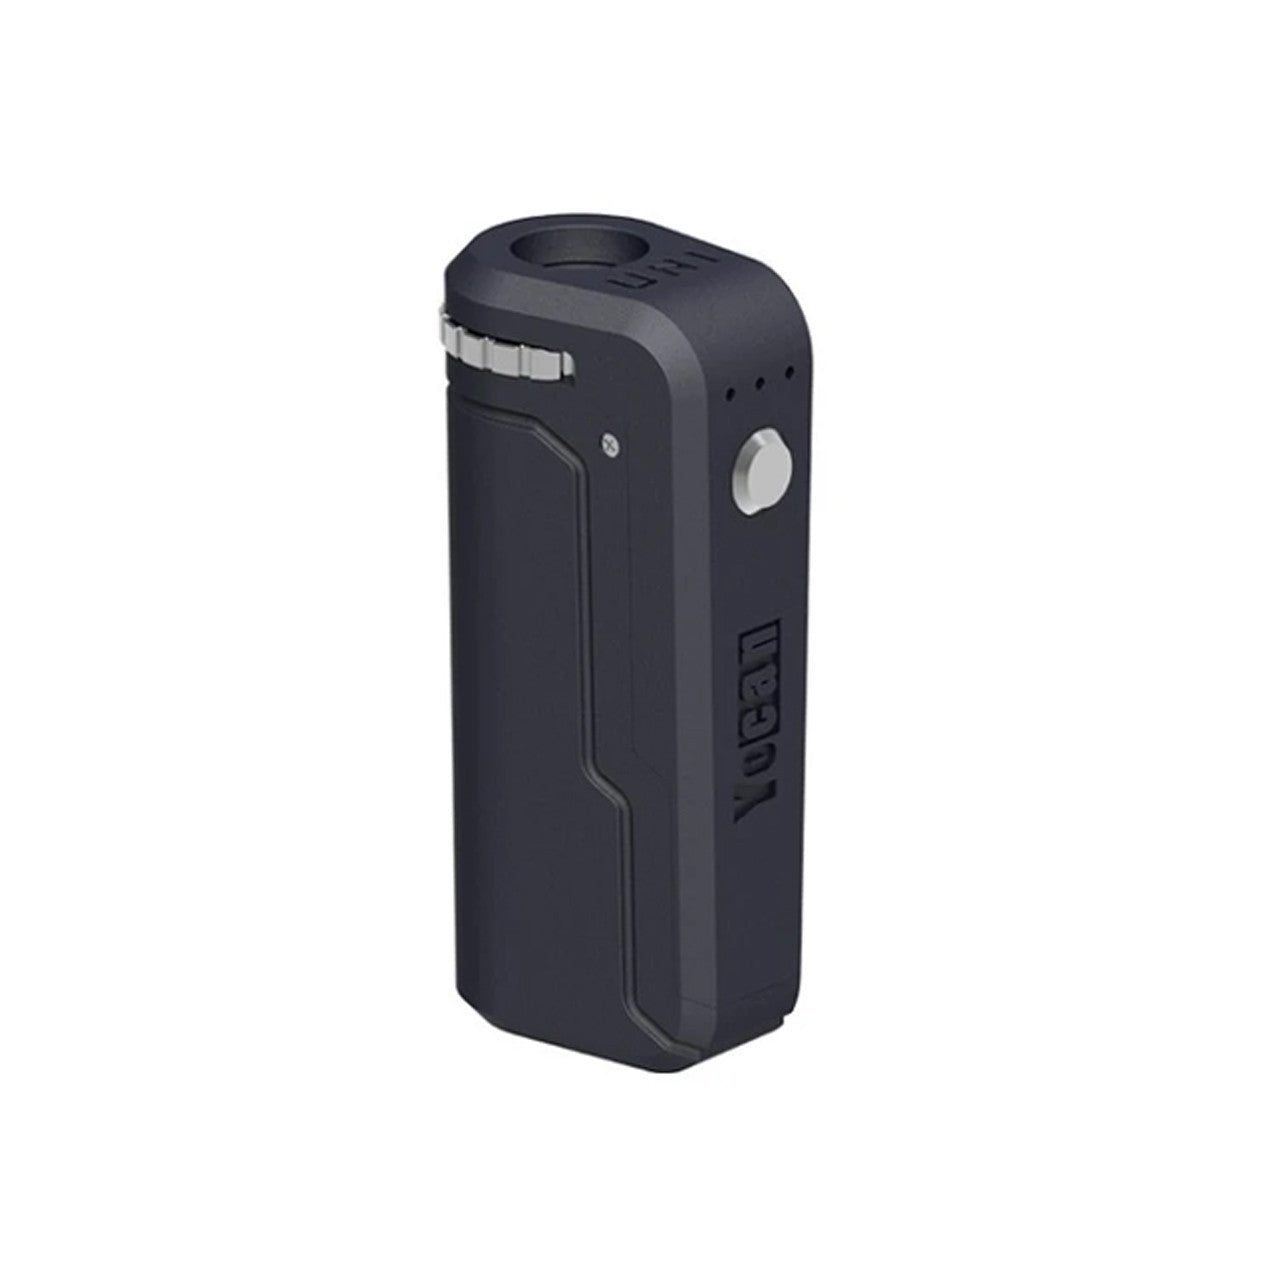 Yocan UNI 650mAh Universal Carto Battery Mod - Smokey Grey